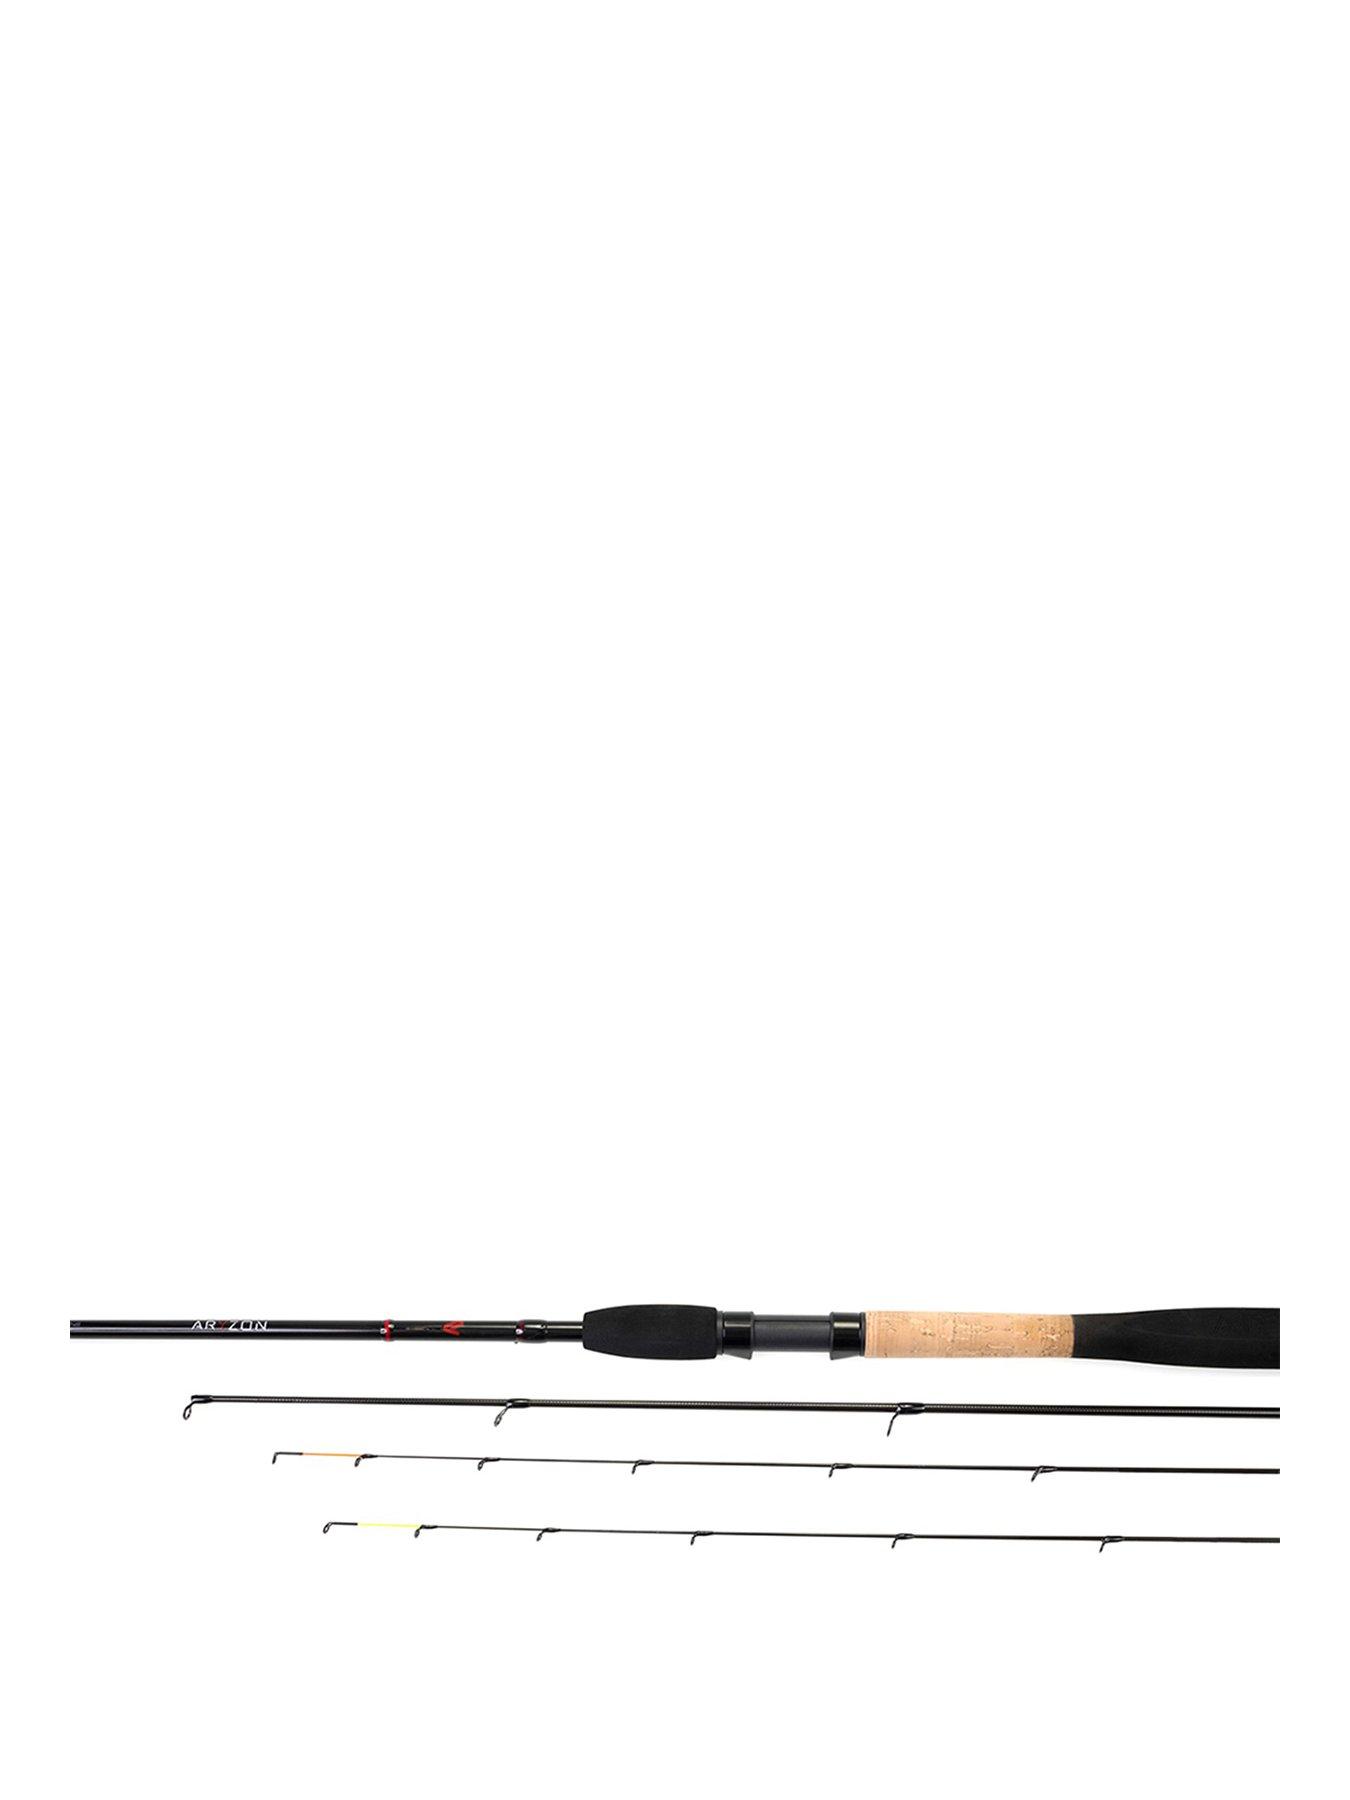 Nytro Aryzon 10 Foot Pellet Waggler Fishing Rod